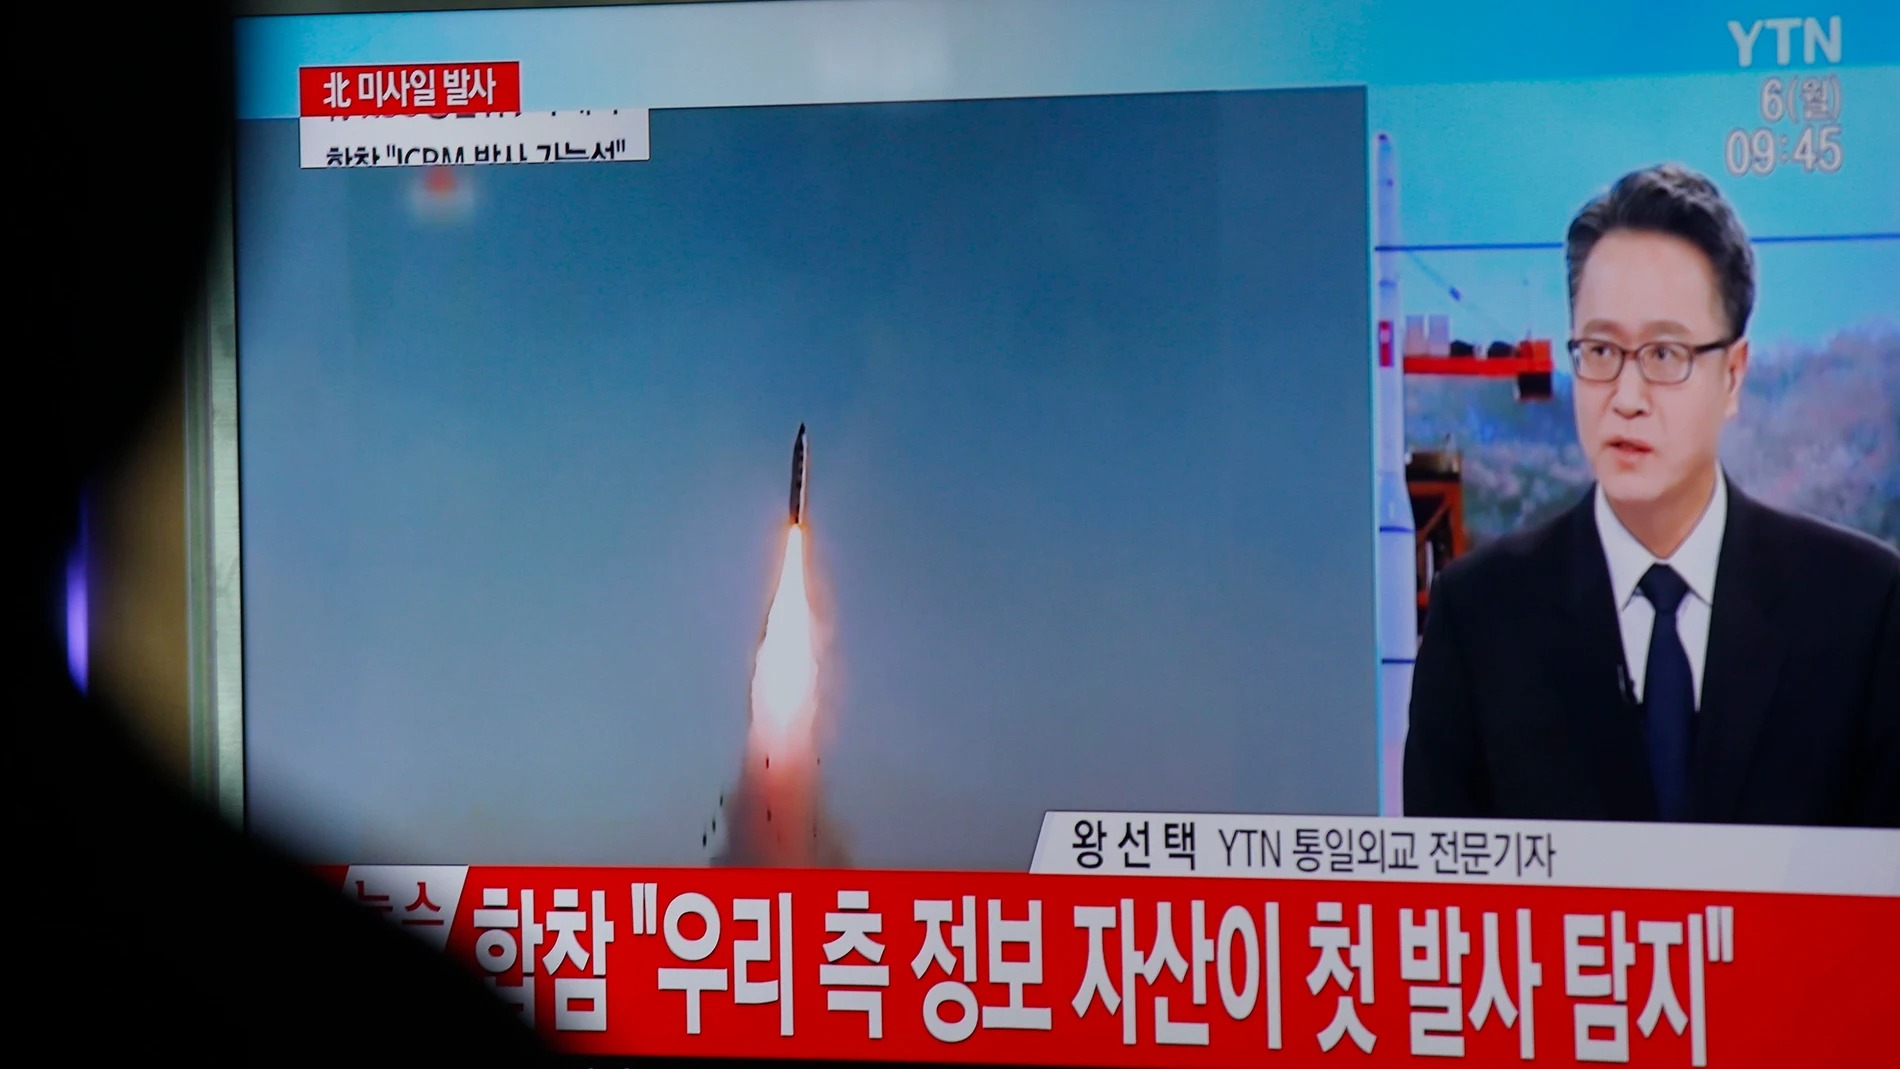 Corea del Norte lanza misil balístico en respuesta a suspensión de acuerdo militar con Corea del Sur